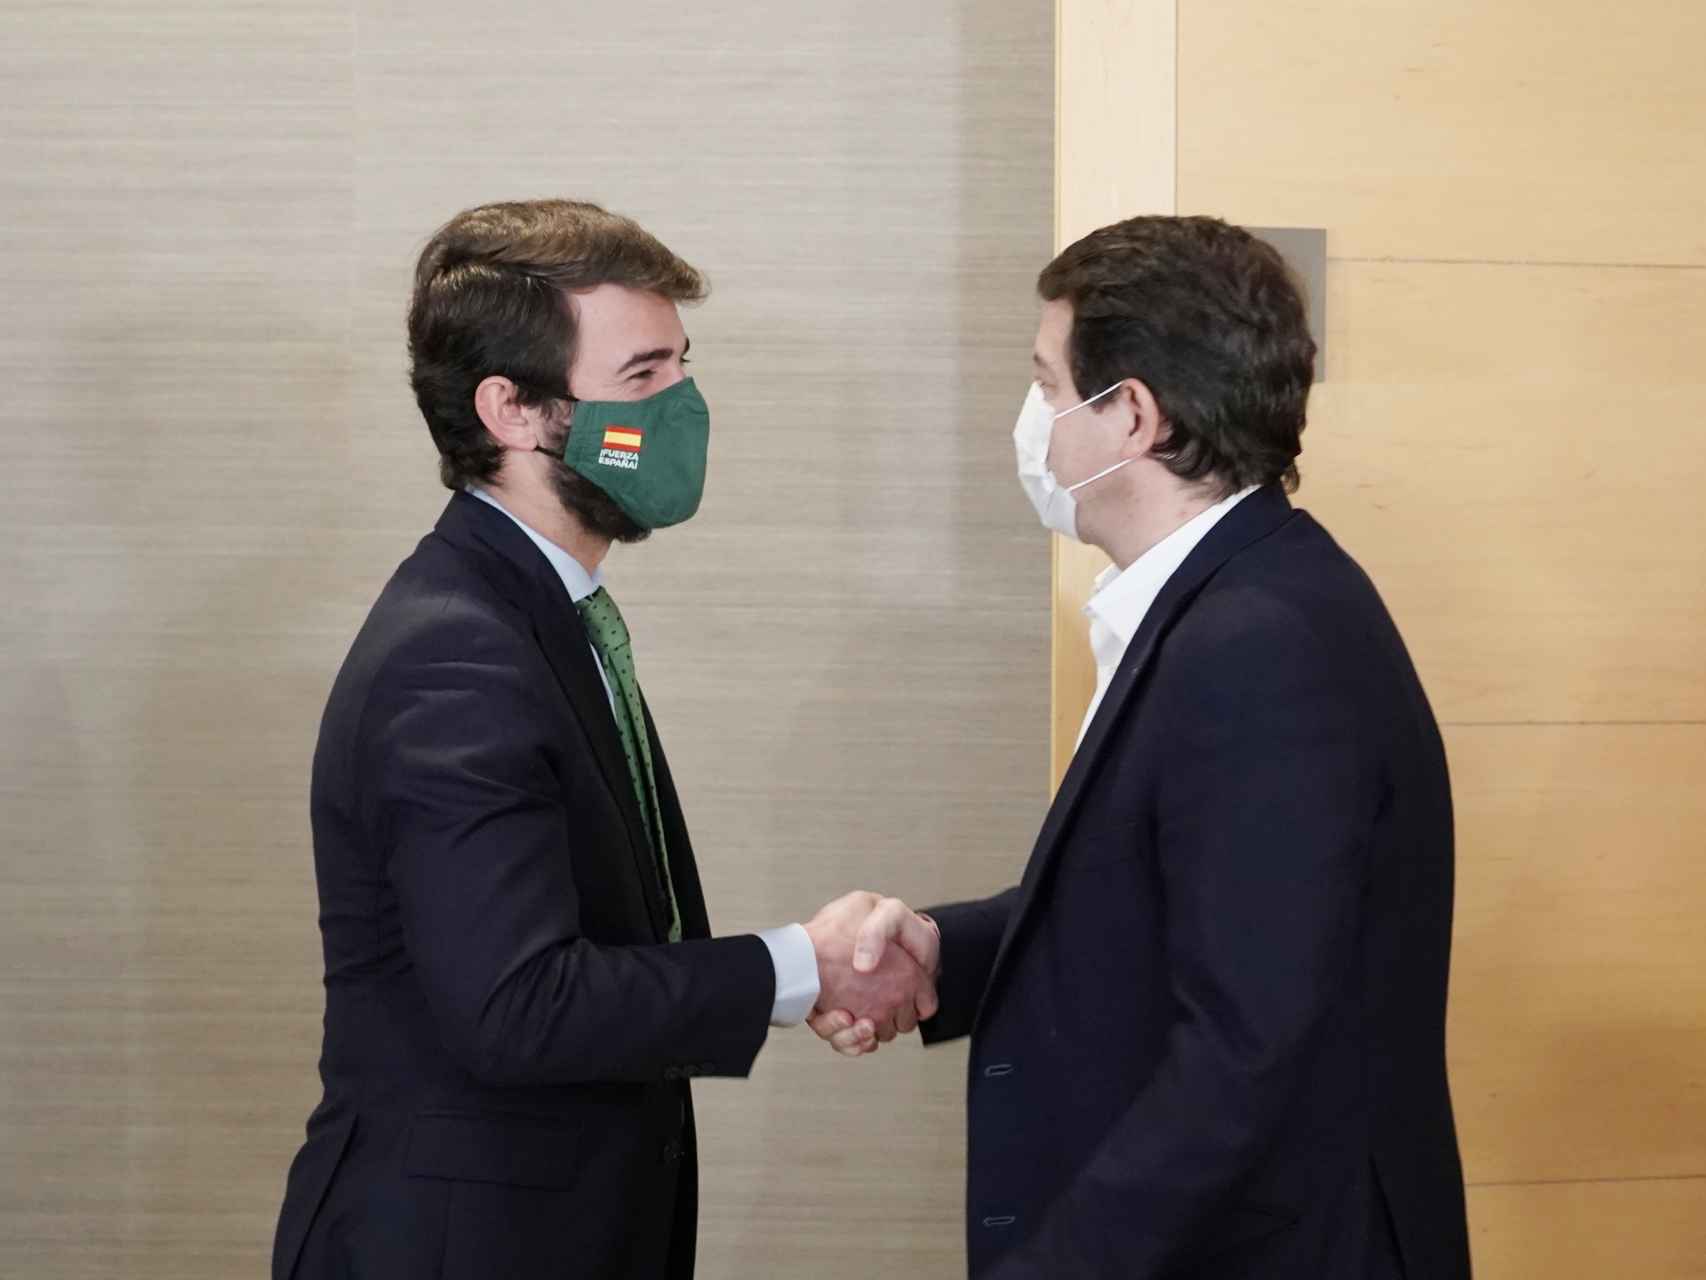 El presidente del PP, Alfonso Fernández Mañueco, se reúne con el candidato de Vox, Juan García-Gallardo, dentro de la ronda de contactos para conformar gobierno / Rubén Cacho ICAL